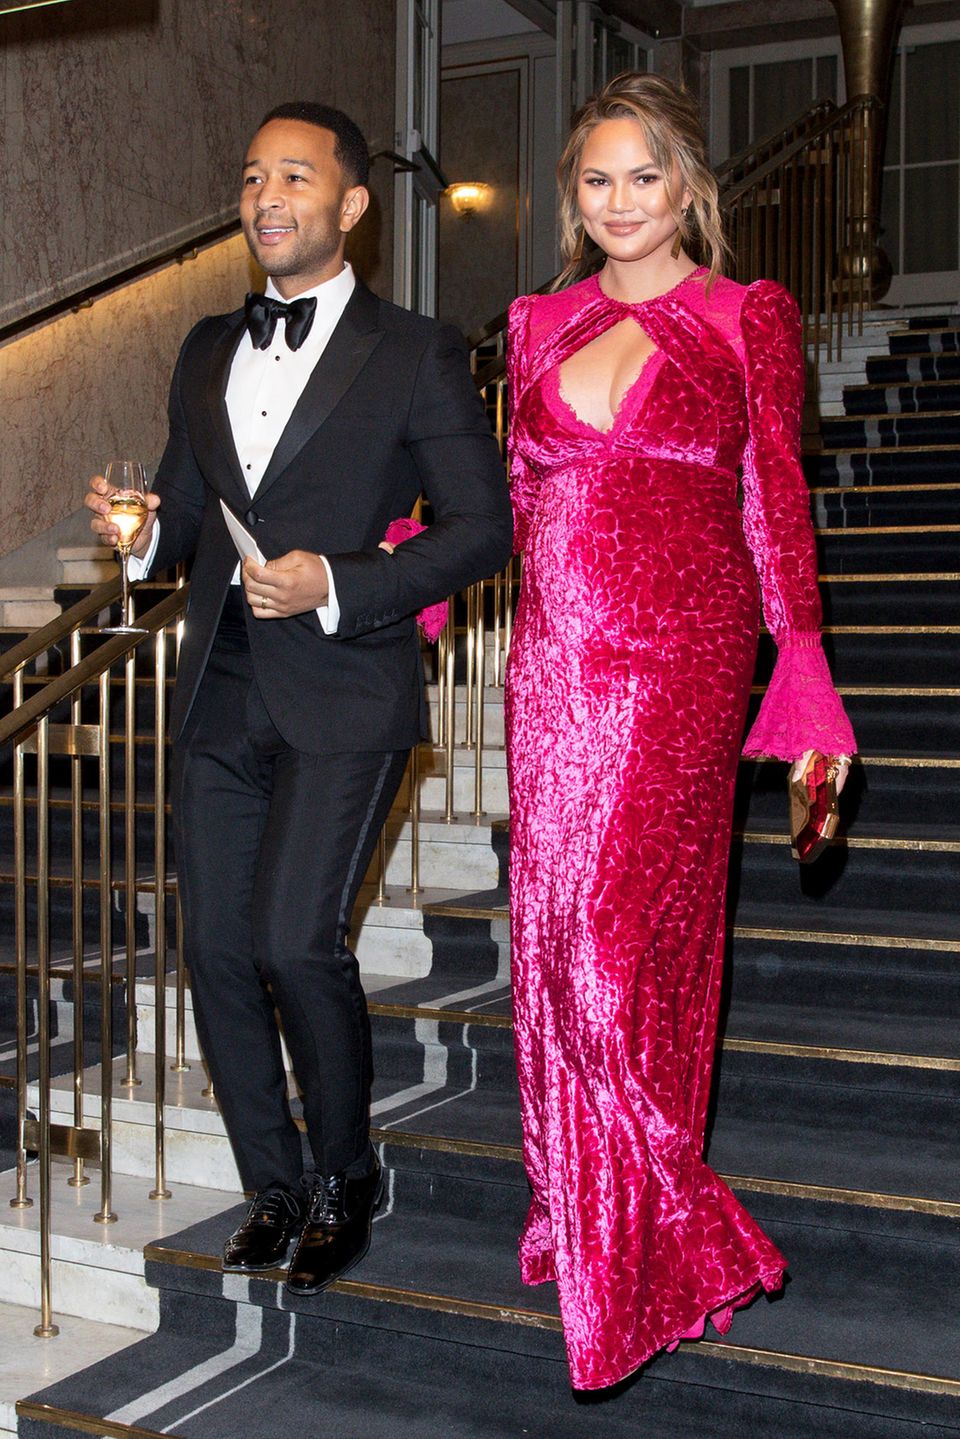 Bei der Nobelpreis-Verleihung kann die schwangere Chrissy Teigen, hier mit ihrerm Mann John Legend, im pinkleuchtendem Samtkleid locker mit den schwedischen Prinzessinnen mithalten.